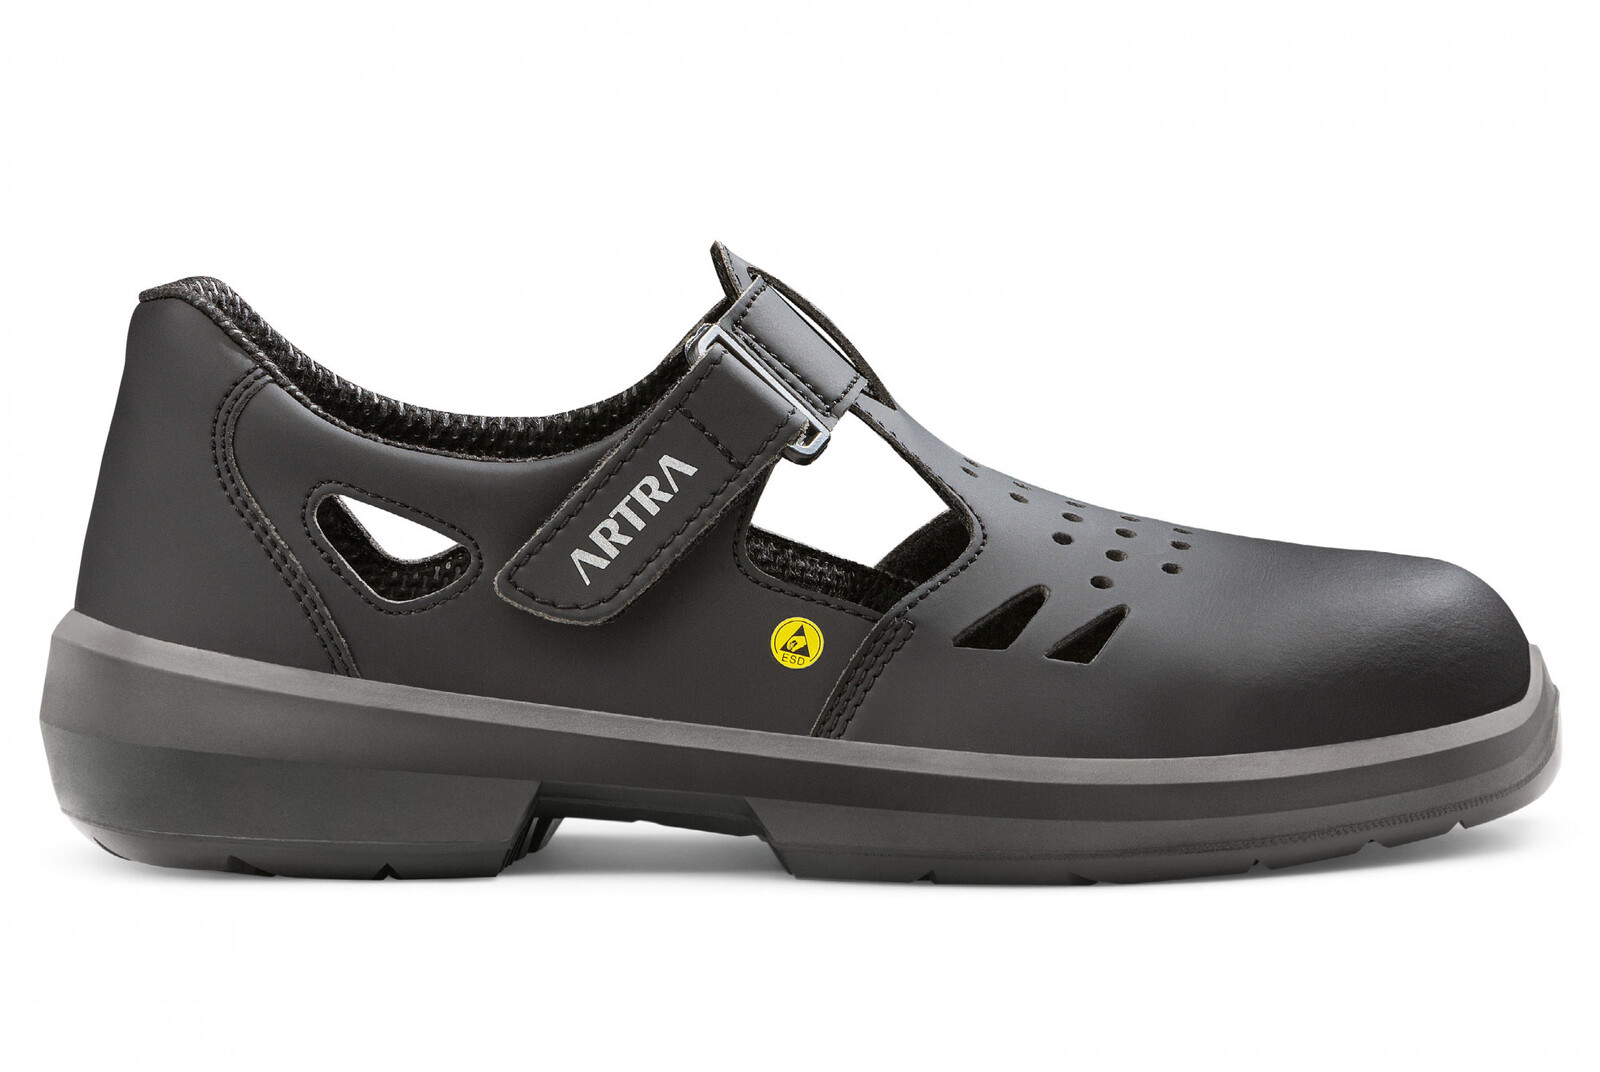 Bezpečnostné sandále Artra Armen 9008 6760 S1P SRC ESD MF - veľkosť: 40, farba: čierna